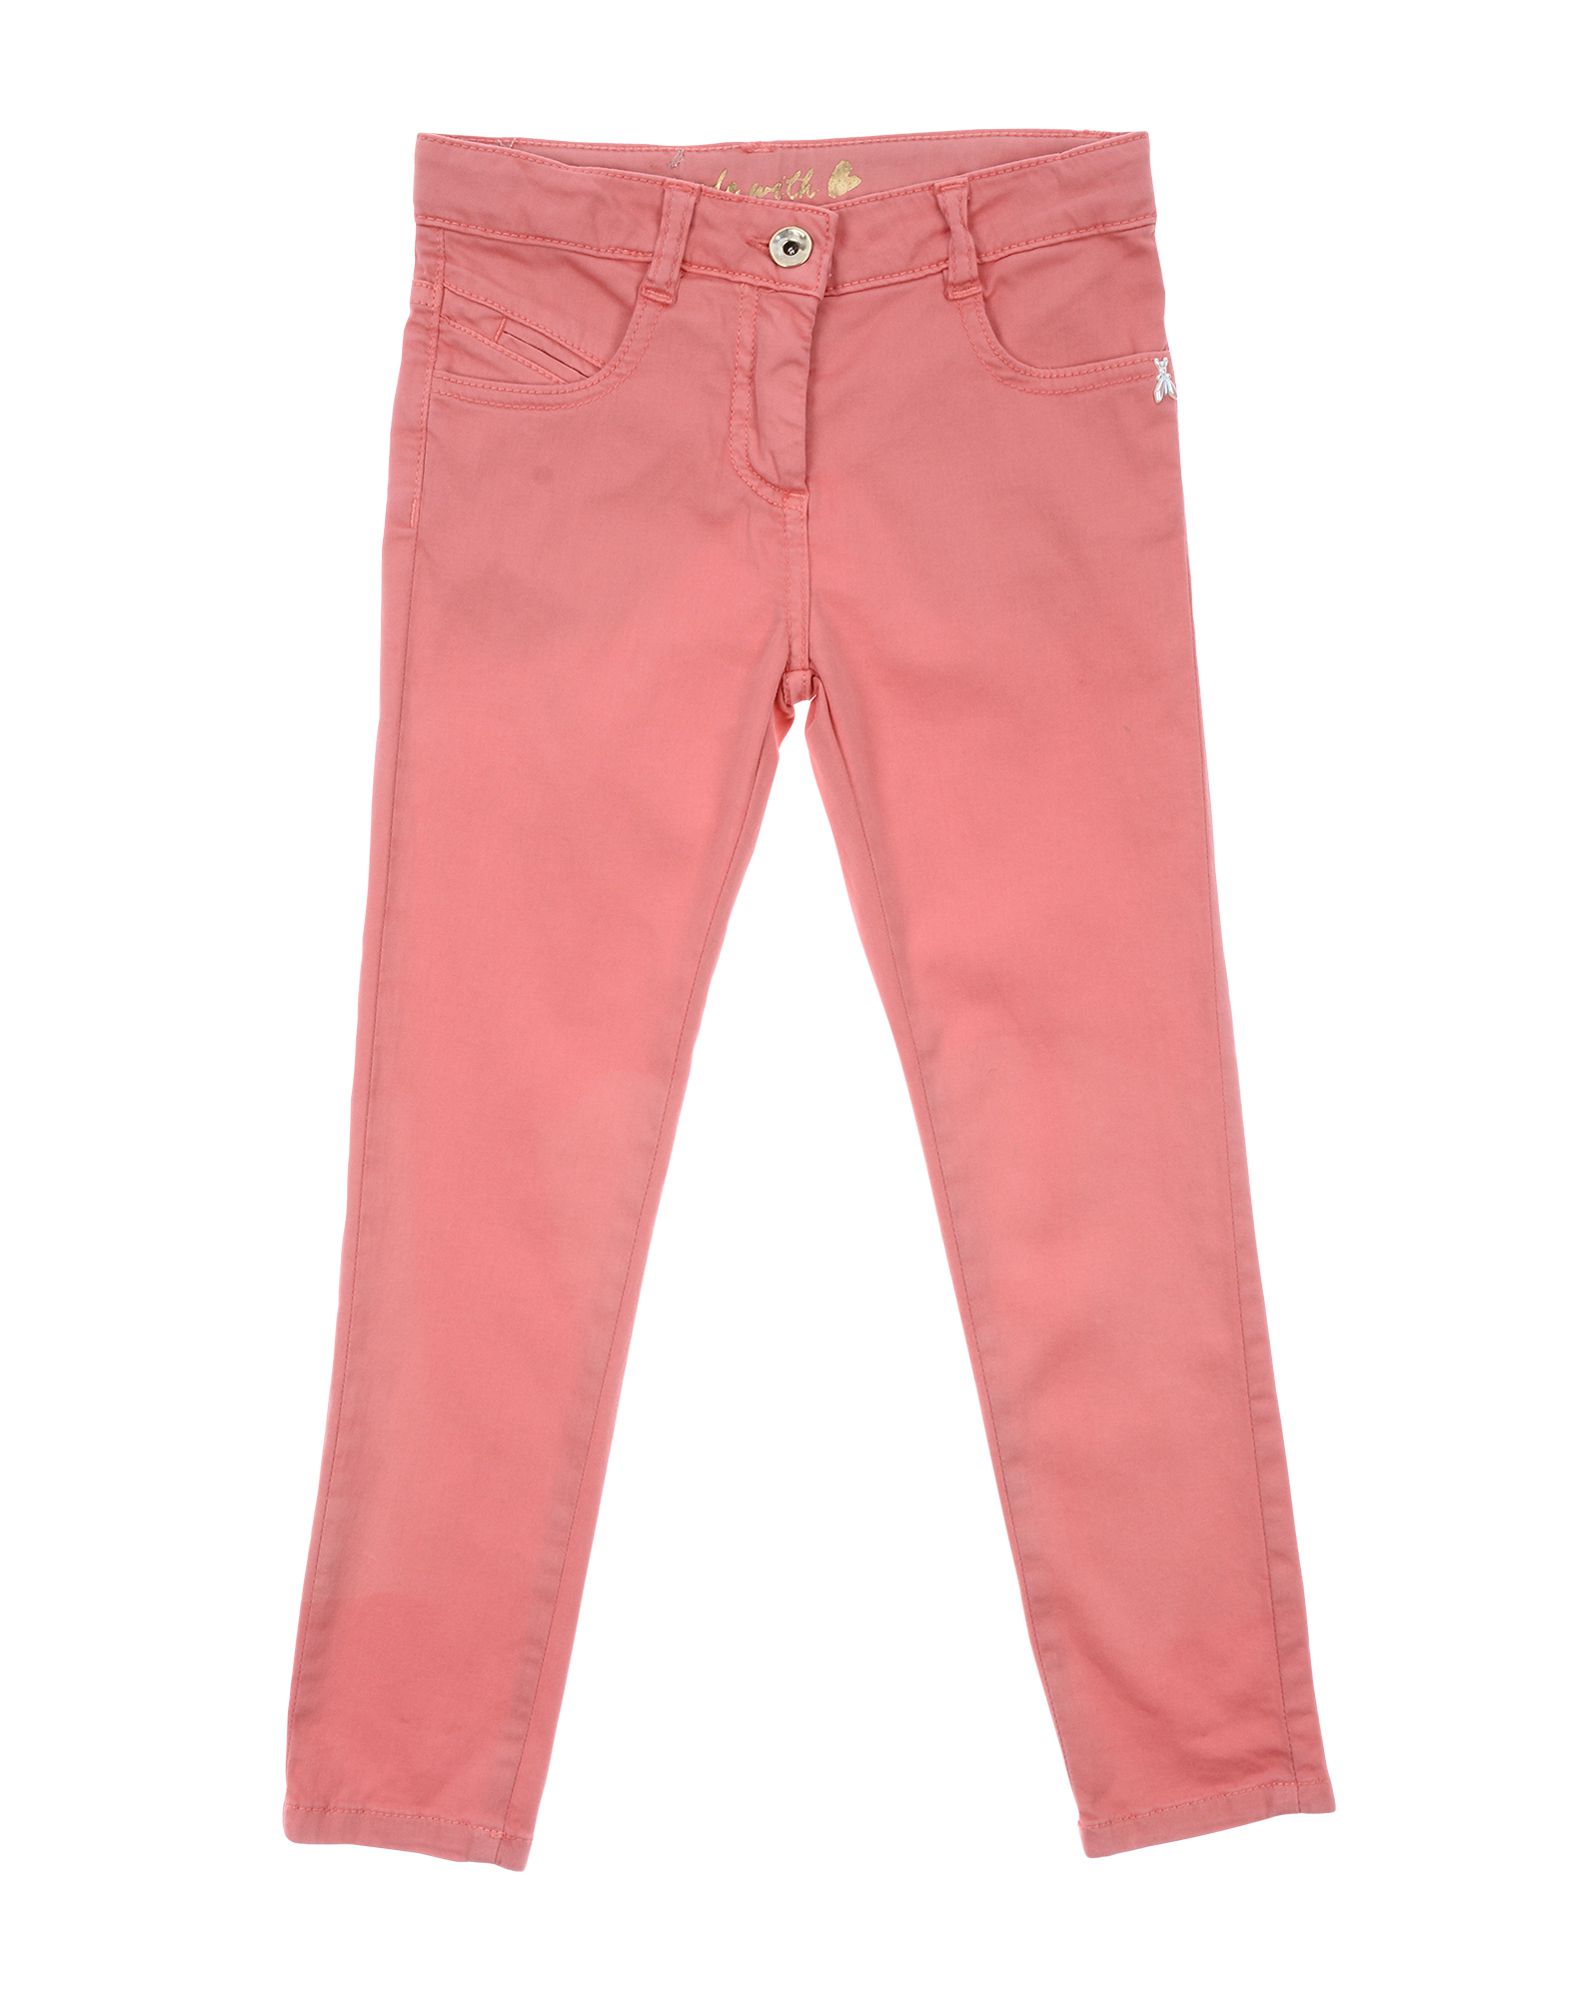 Patrizia Pepe Kids' Pants In Pastel Pink